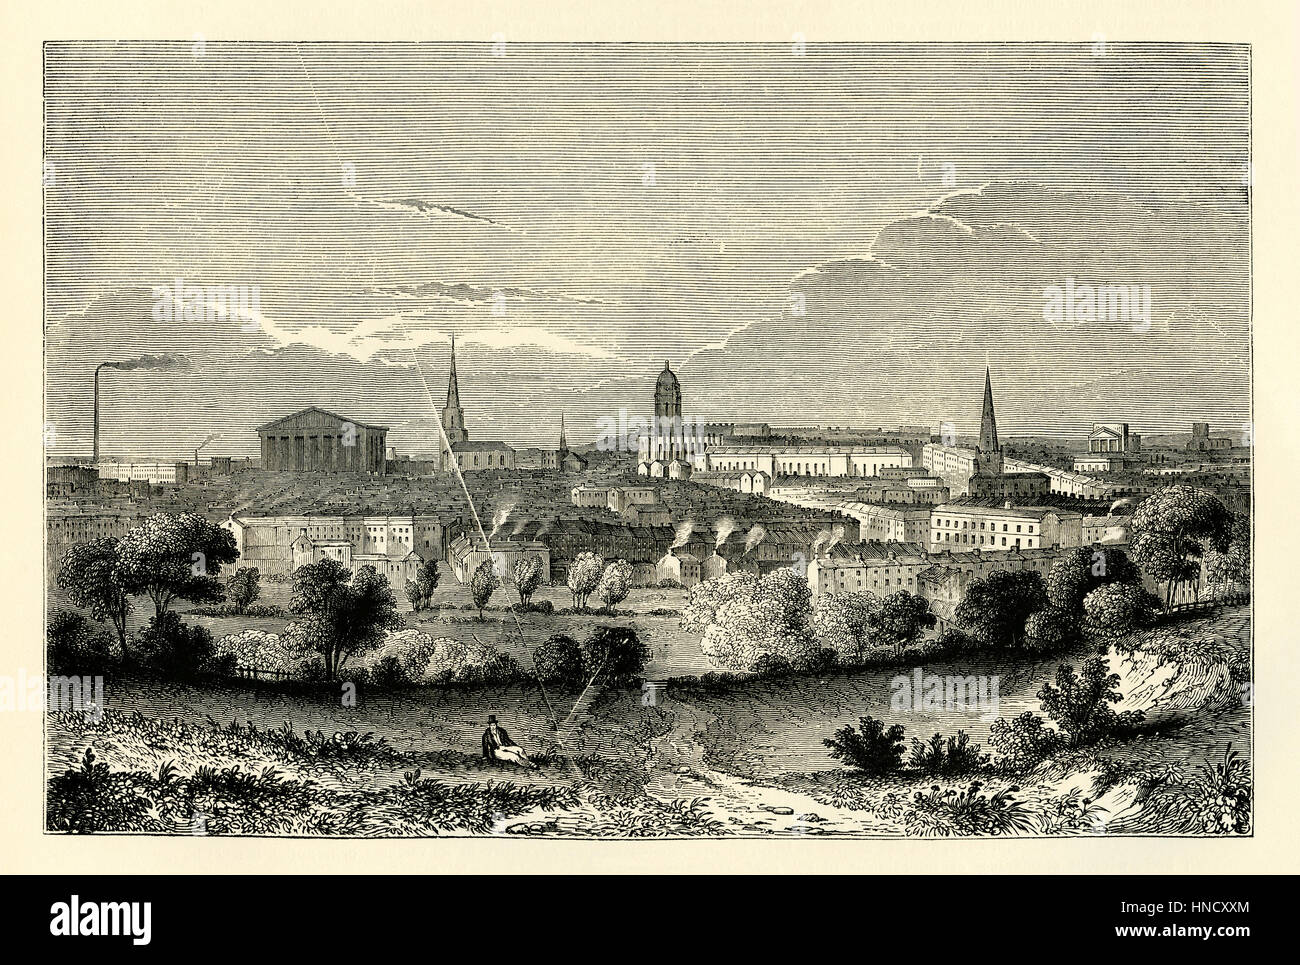 Birmingham, West Midlands, Inghilterra - una vecchia incisione c. 1840. Un mercato comune nel medioevo, Birmingham crebbe rapidamente nella rivoluzione industriale Foto Stock